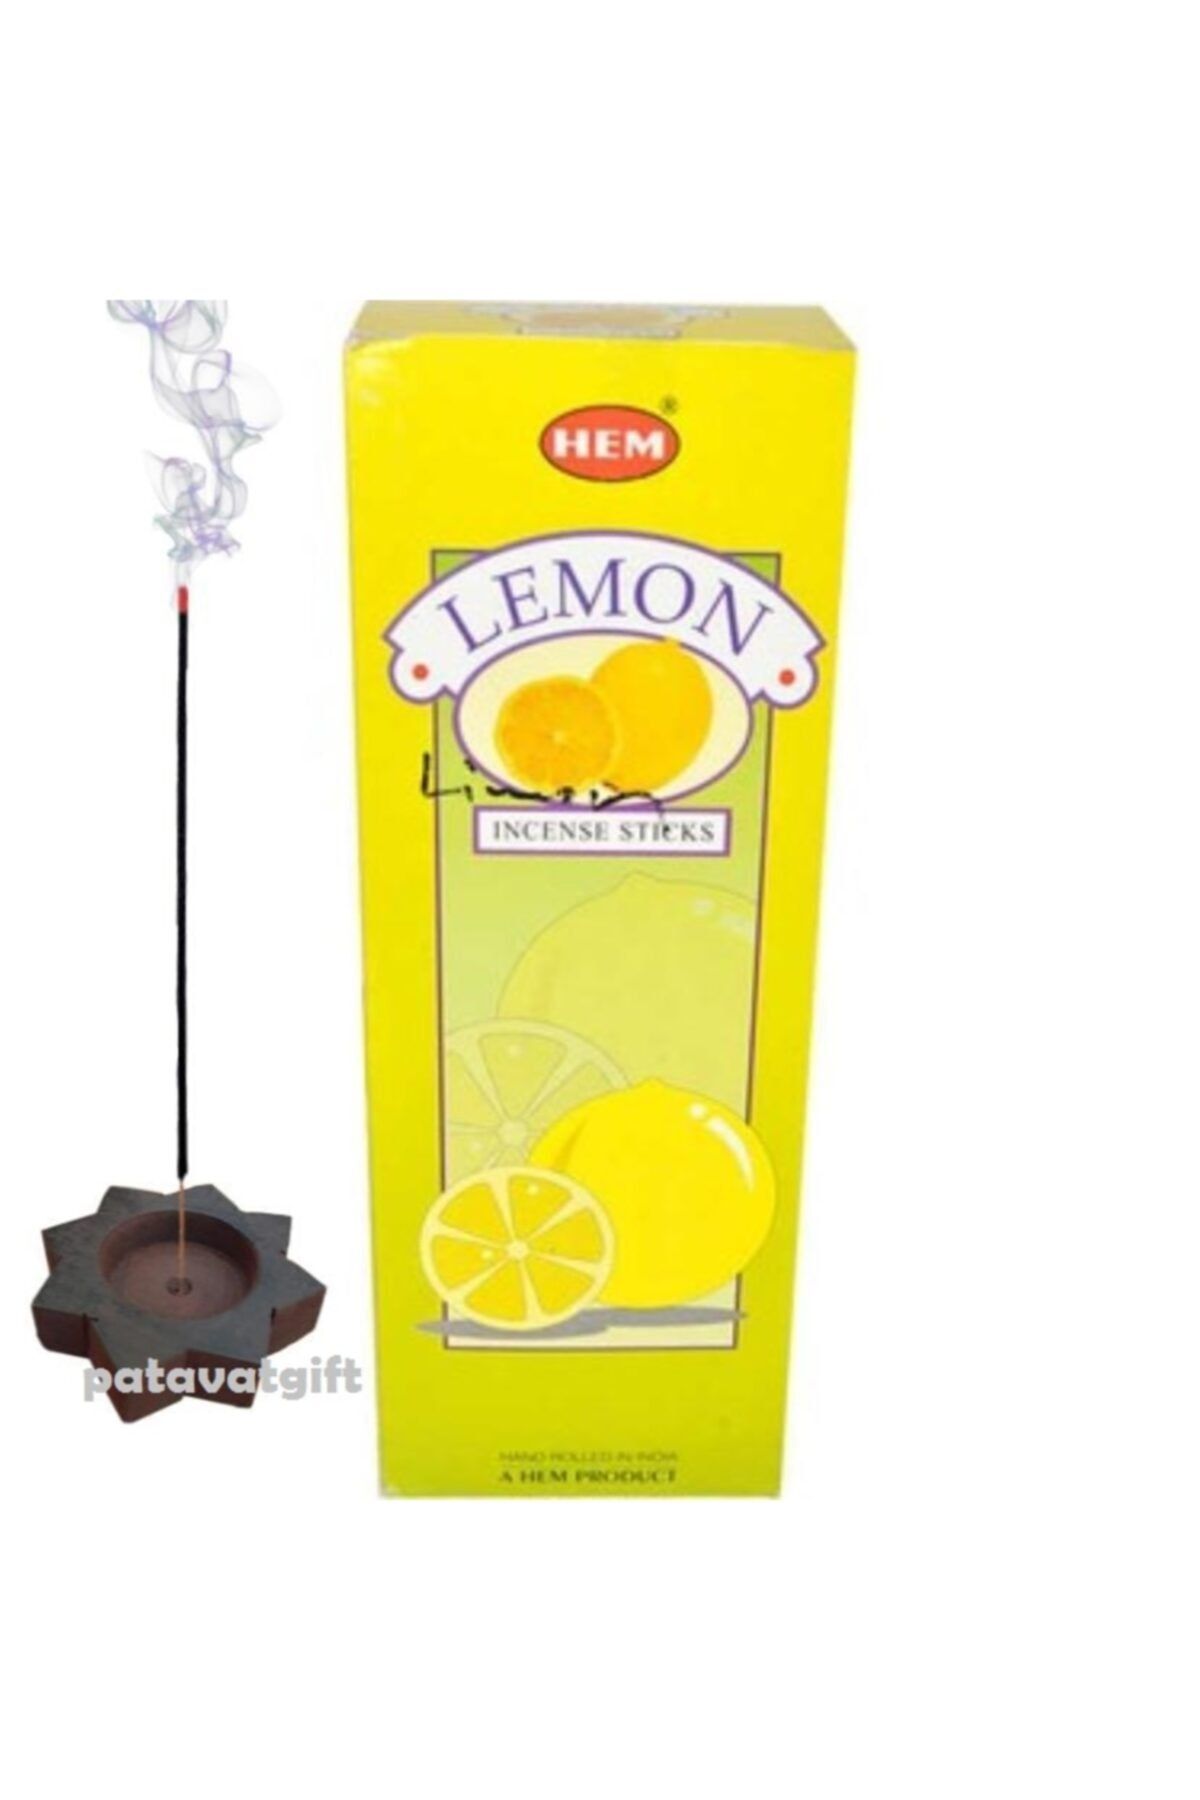 Hem Tütsü Limon 120 Adet Tütsü Yıldız Tütsülük Hediyeli